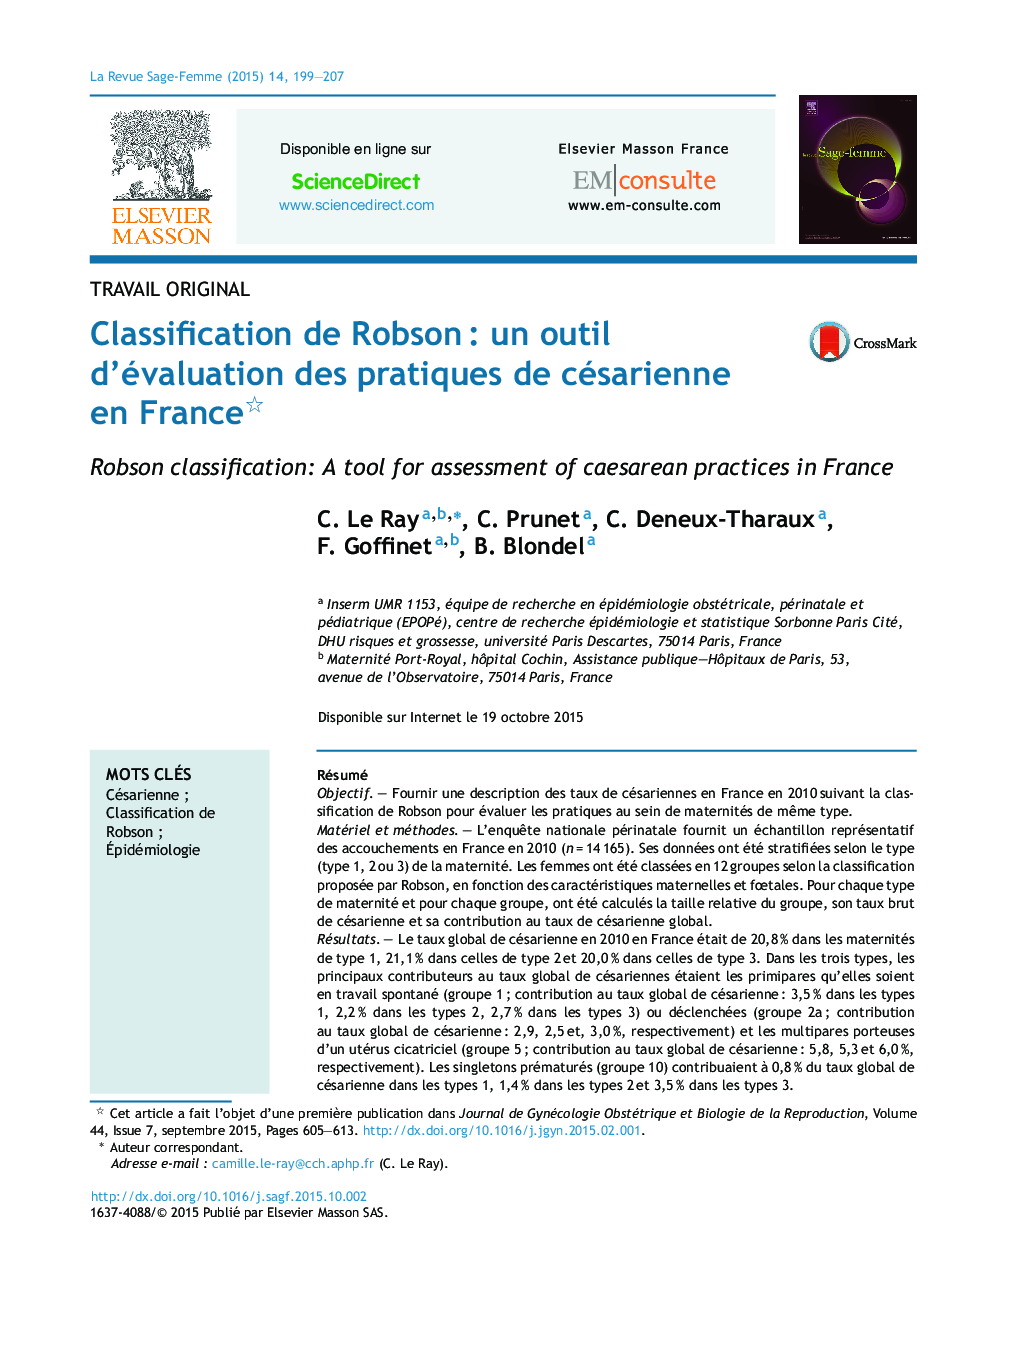 Classification de RobsonÂ : un outil d'évaluation des pratiques de césarienne en France